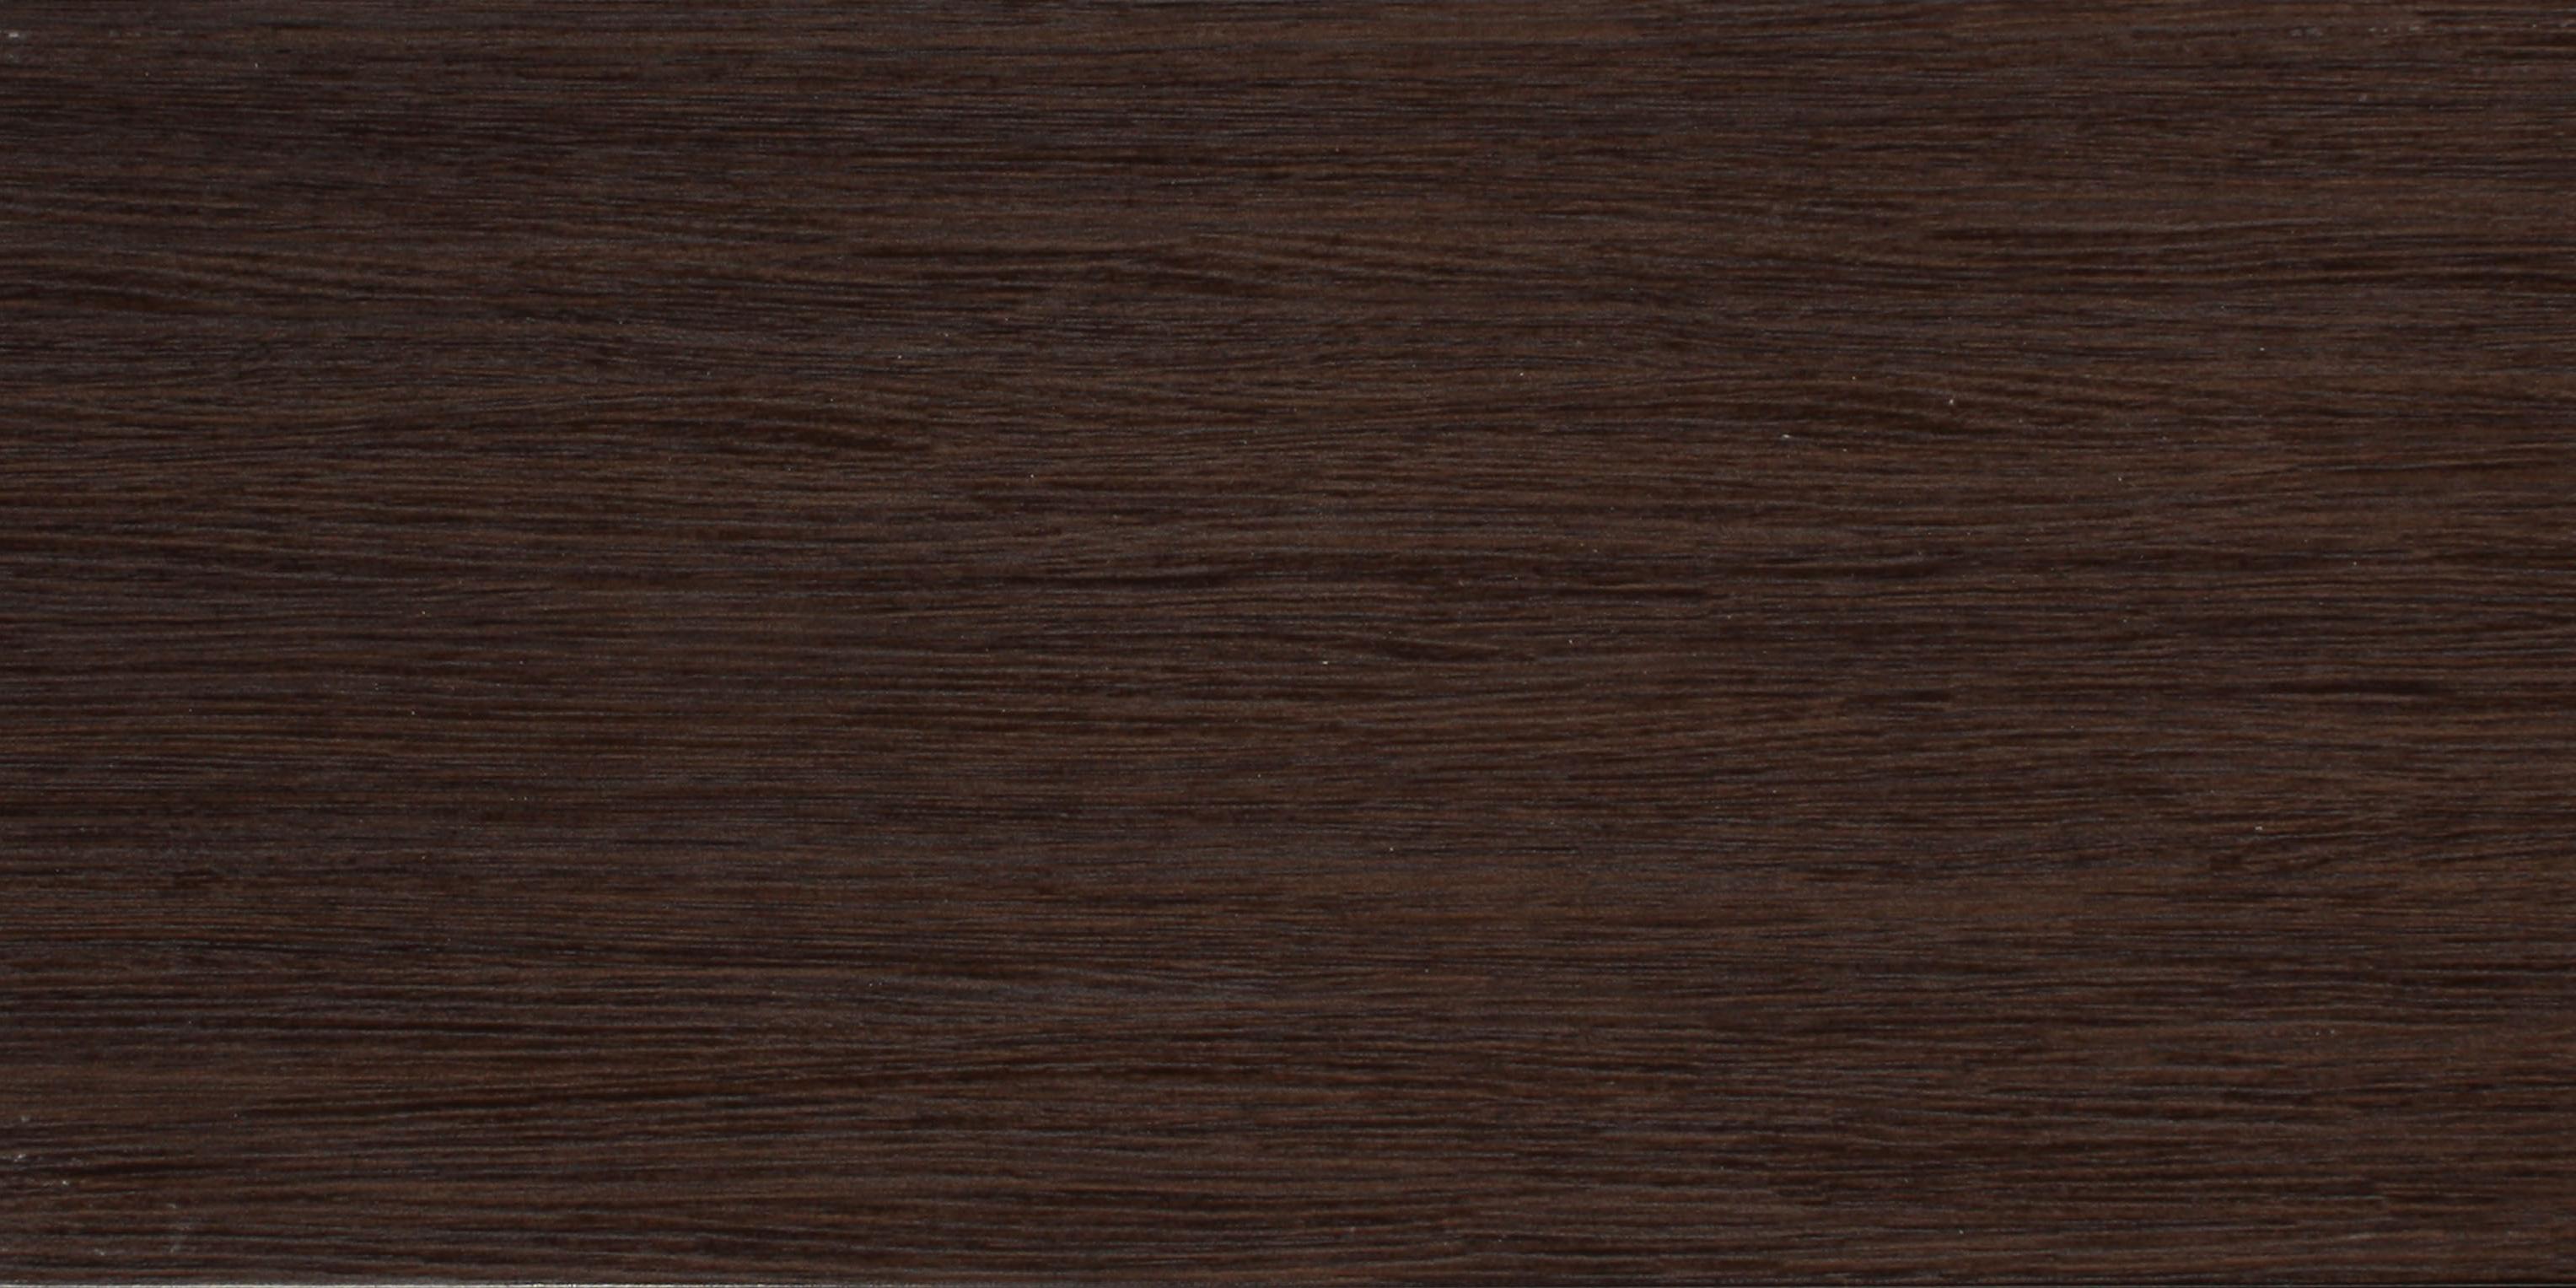 Керамическая плитка Эдем коричневая 1041-0057 19.8x39.8